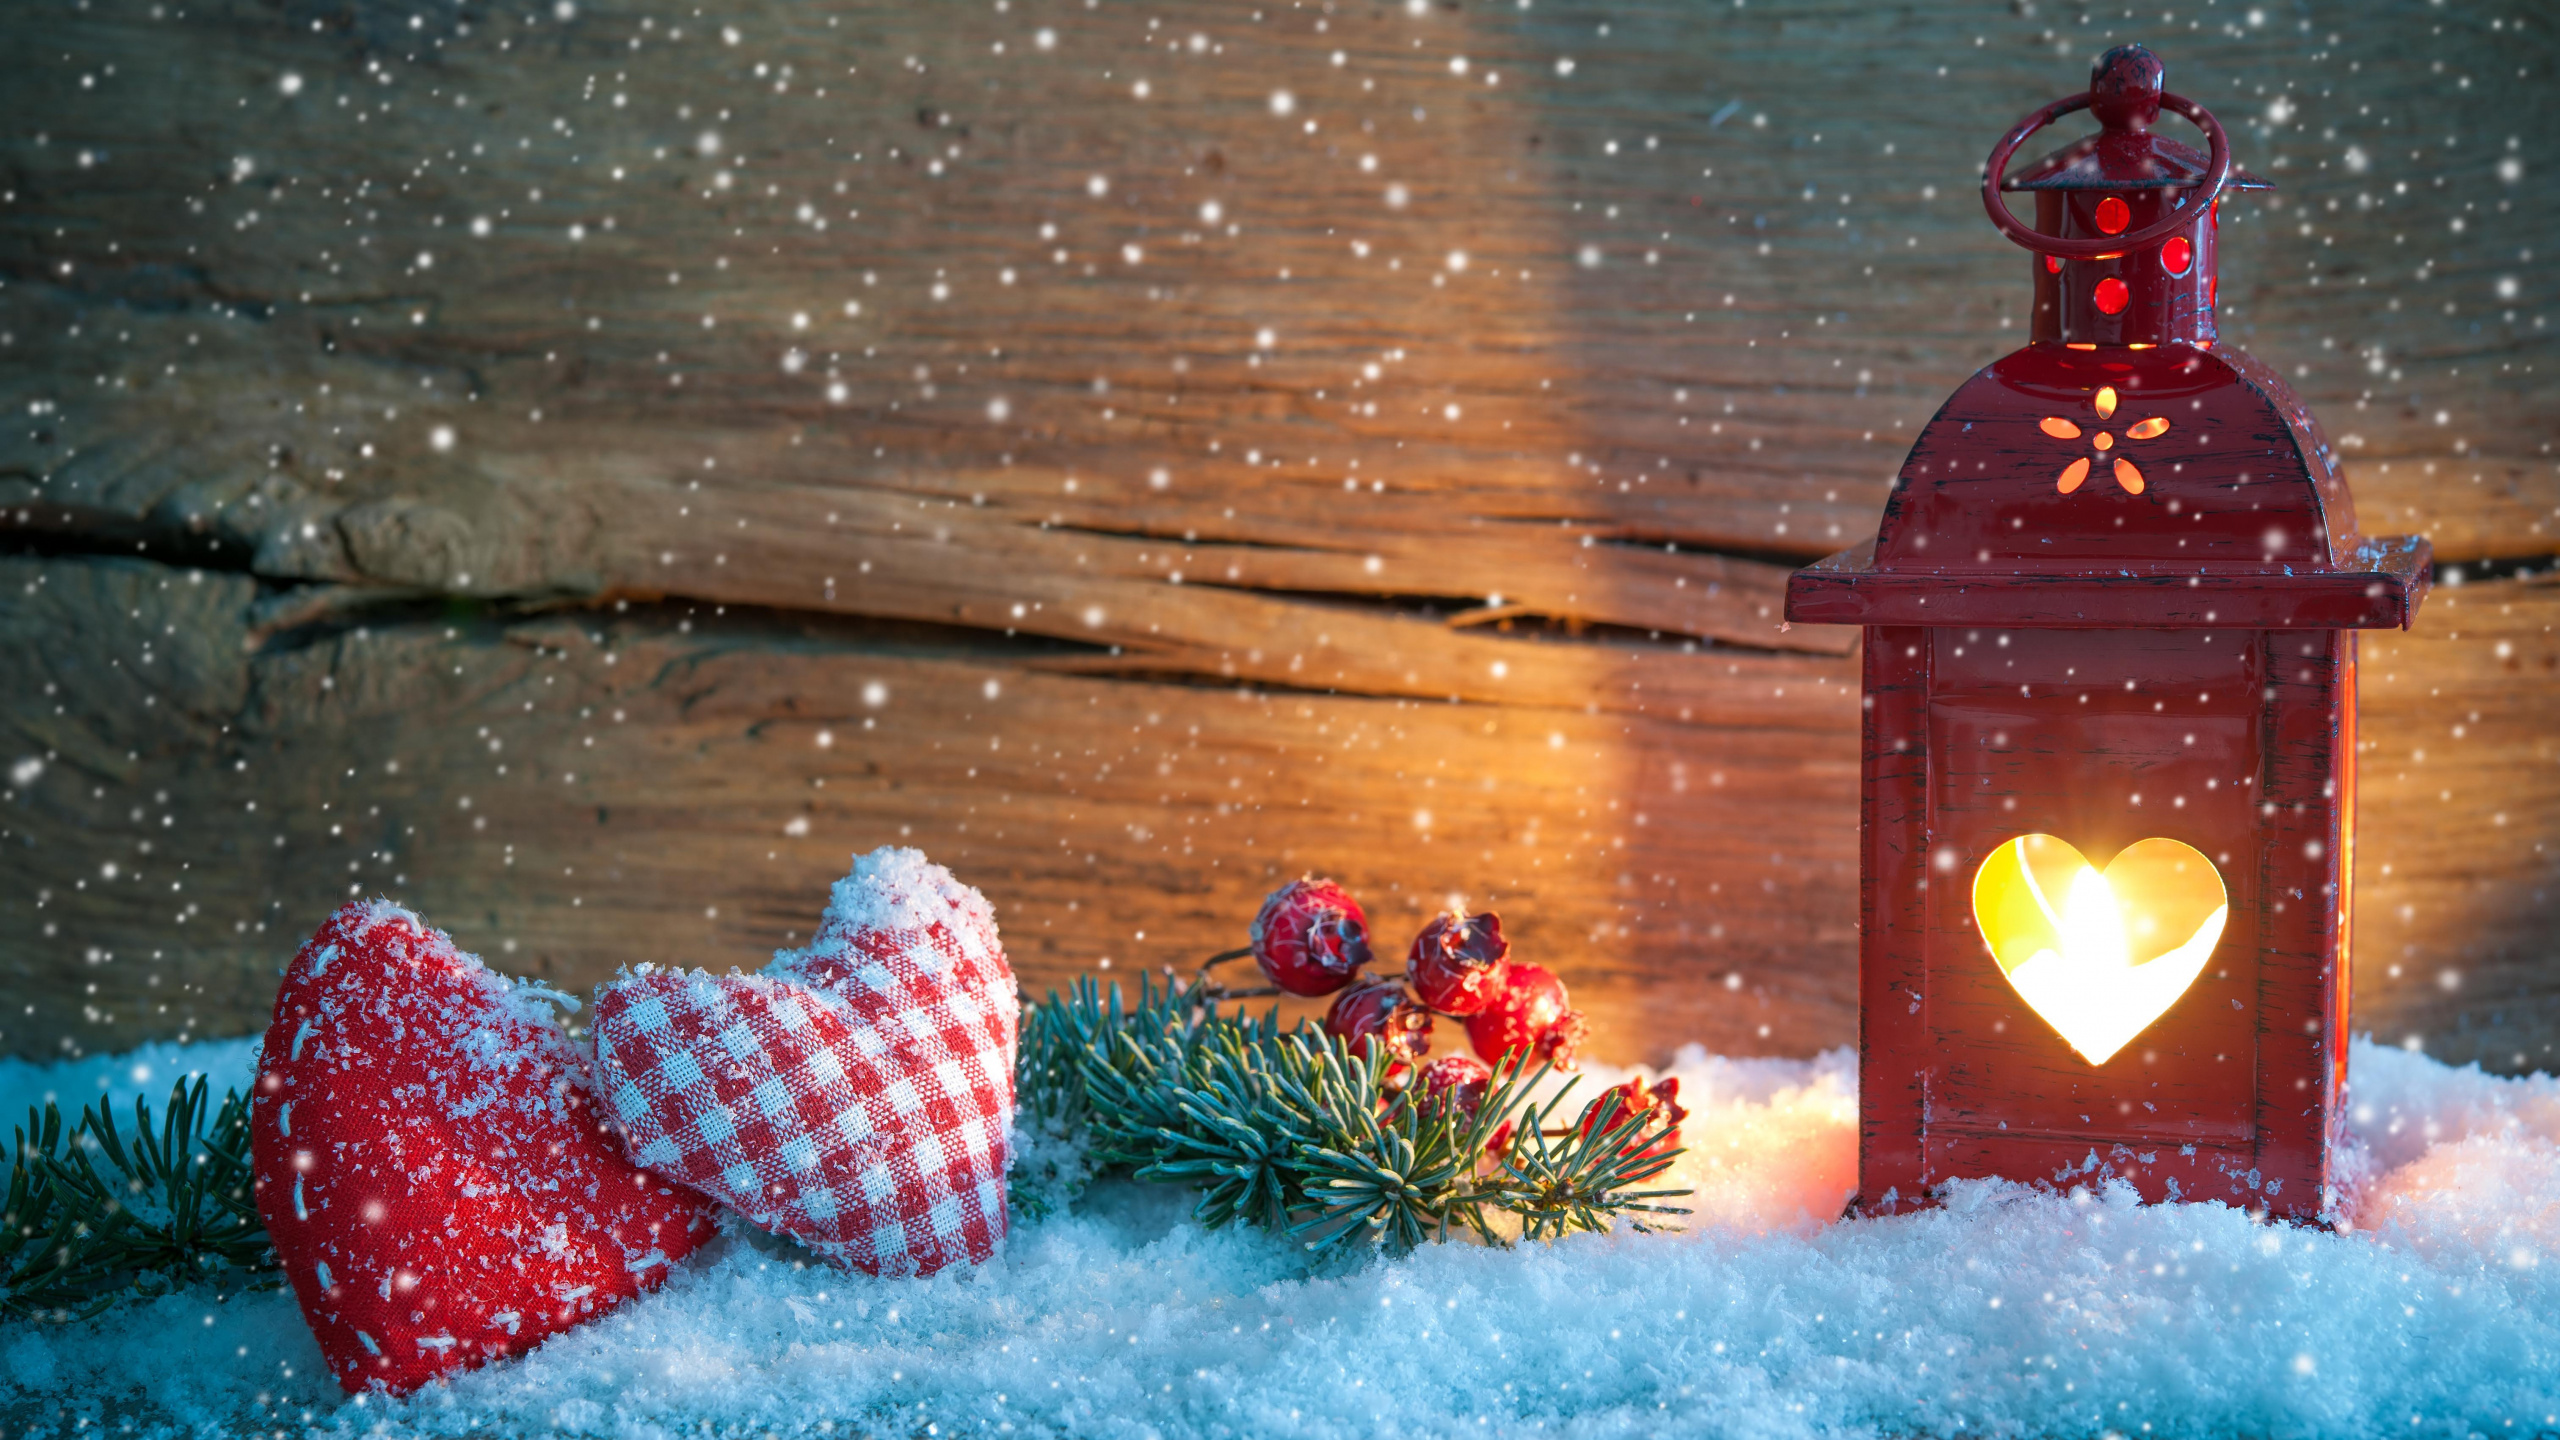 Обои Рождественский фонарь, Рождественский день, фонарь, зима, освещение в разрешении 2560x1440